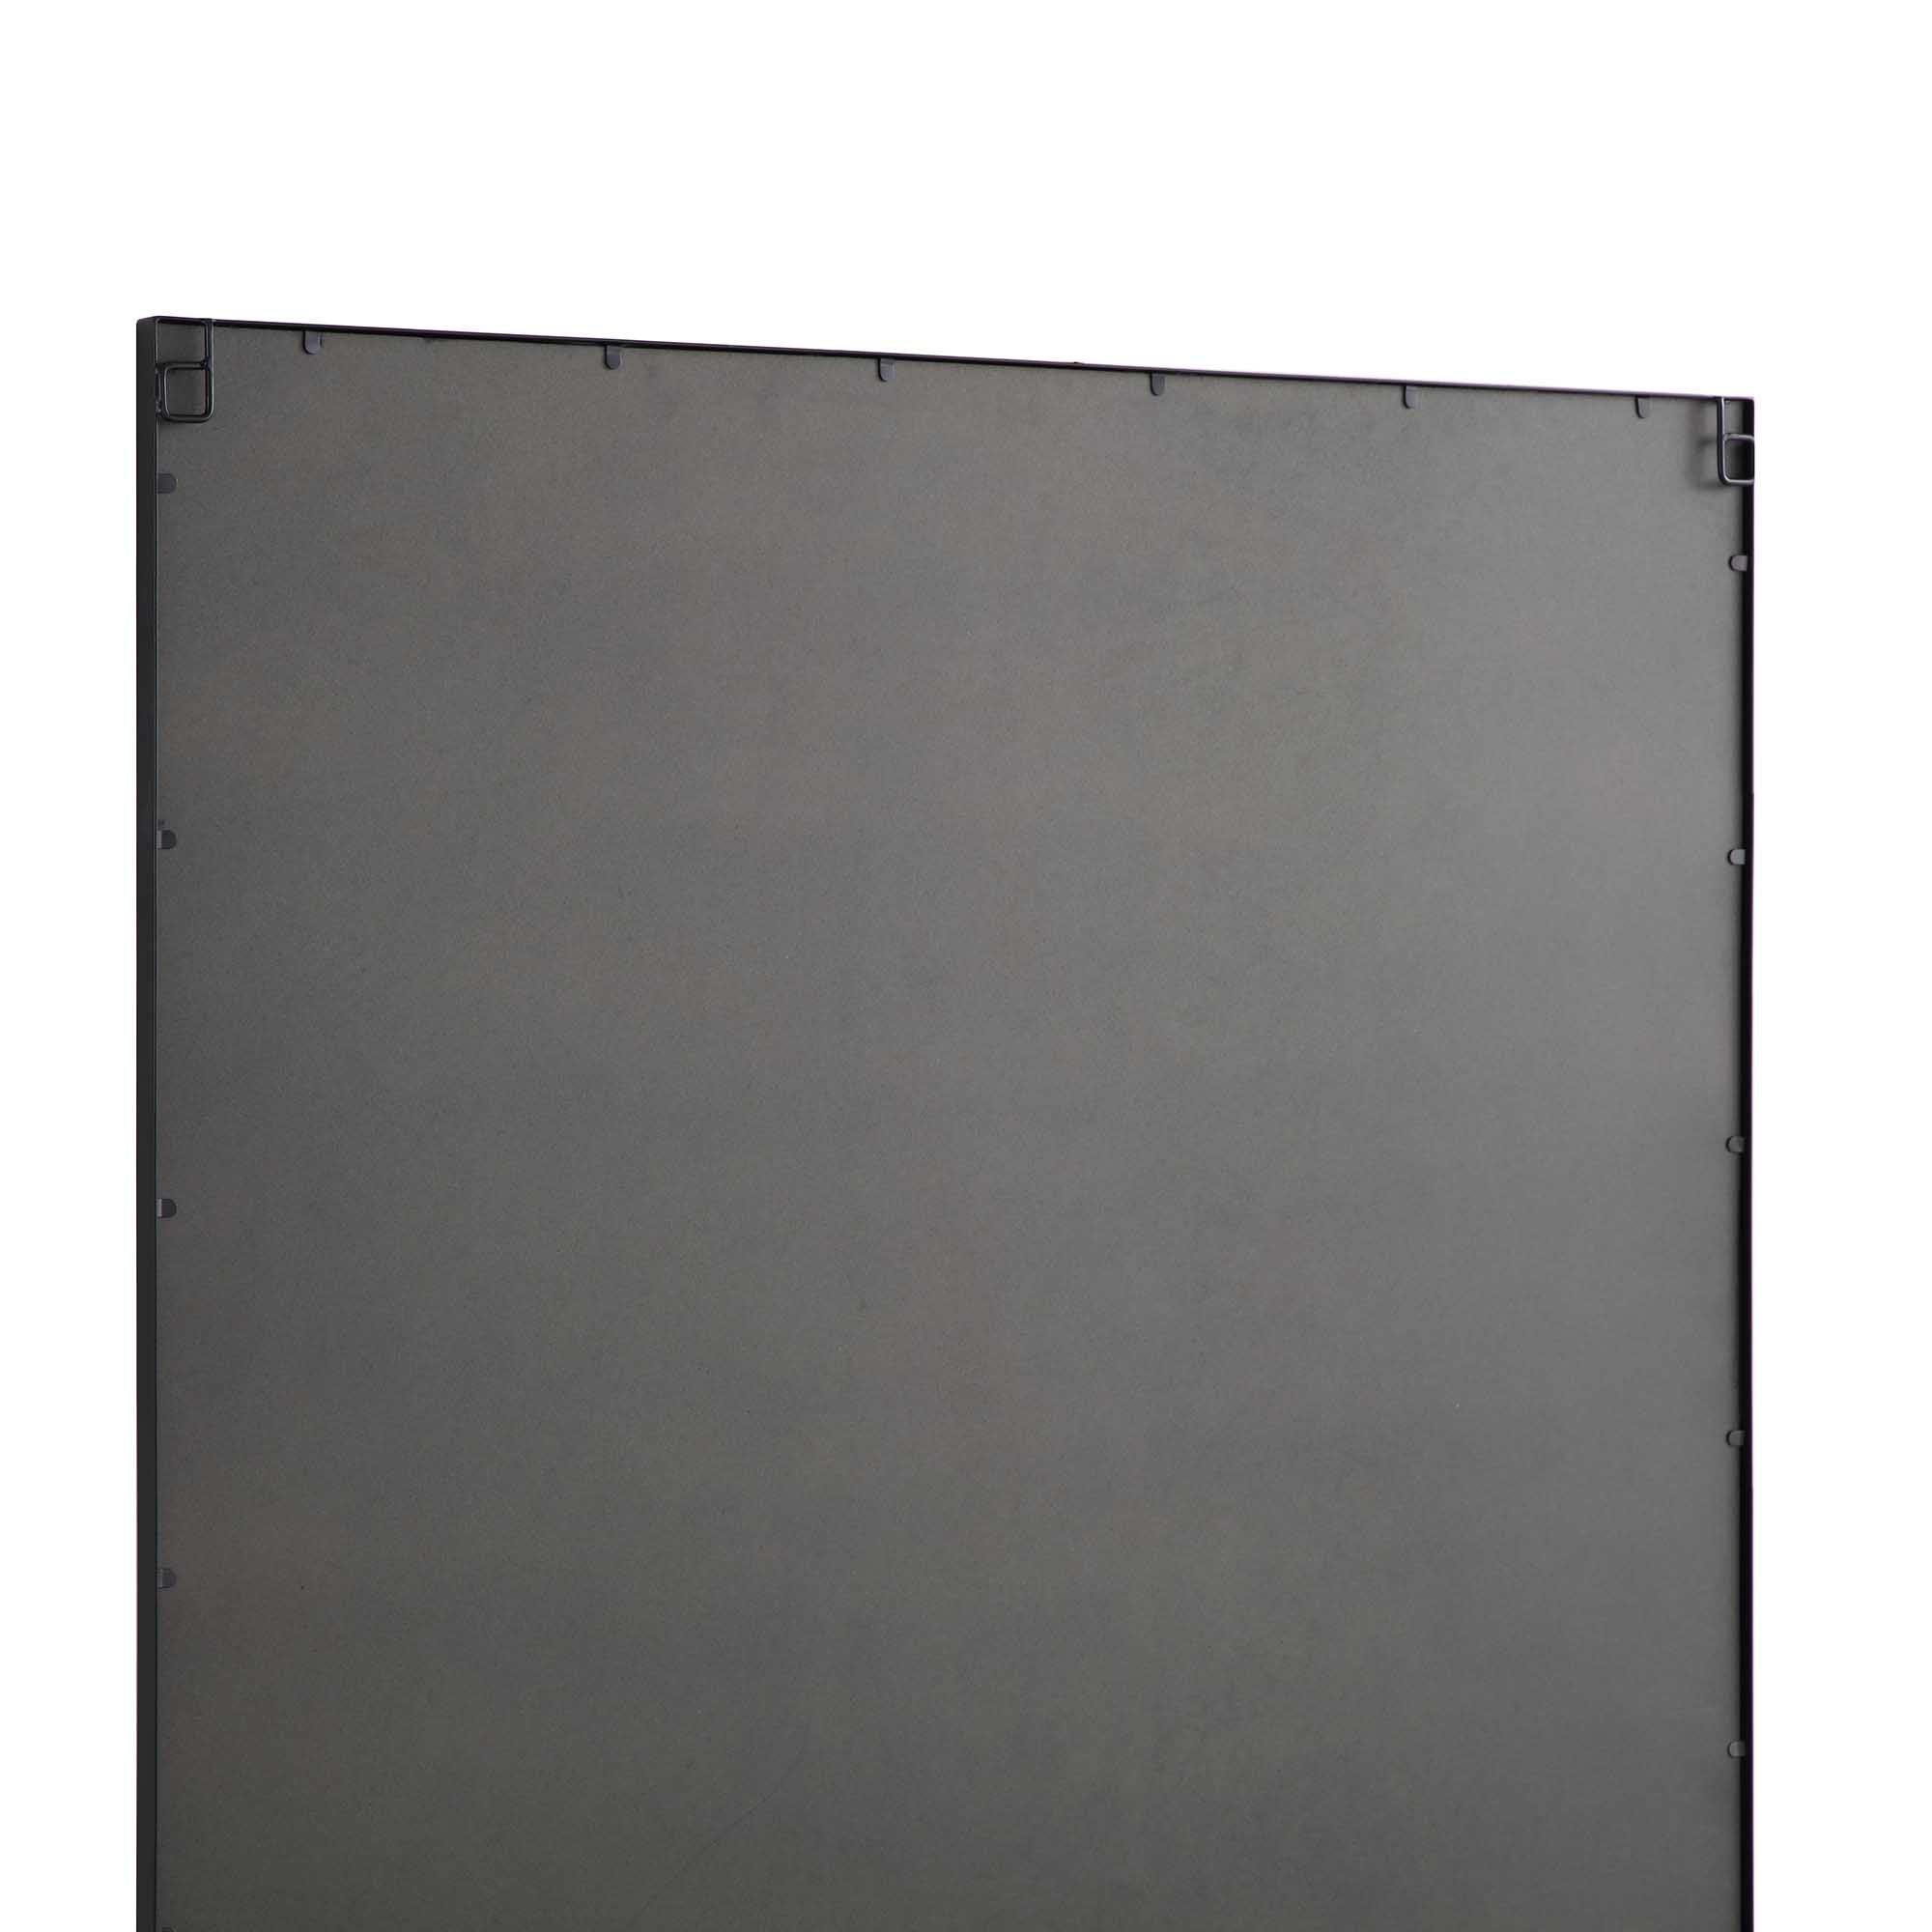 Herbert Industrial Metal Window Mirror 120 x 120 cm, Black